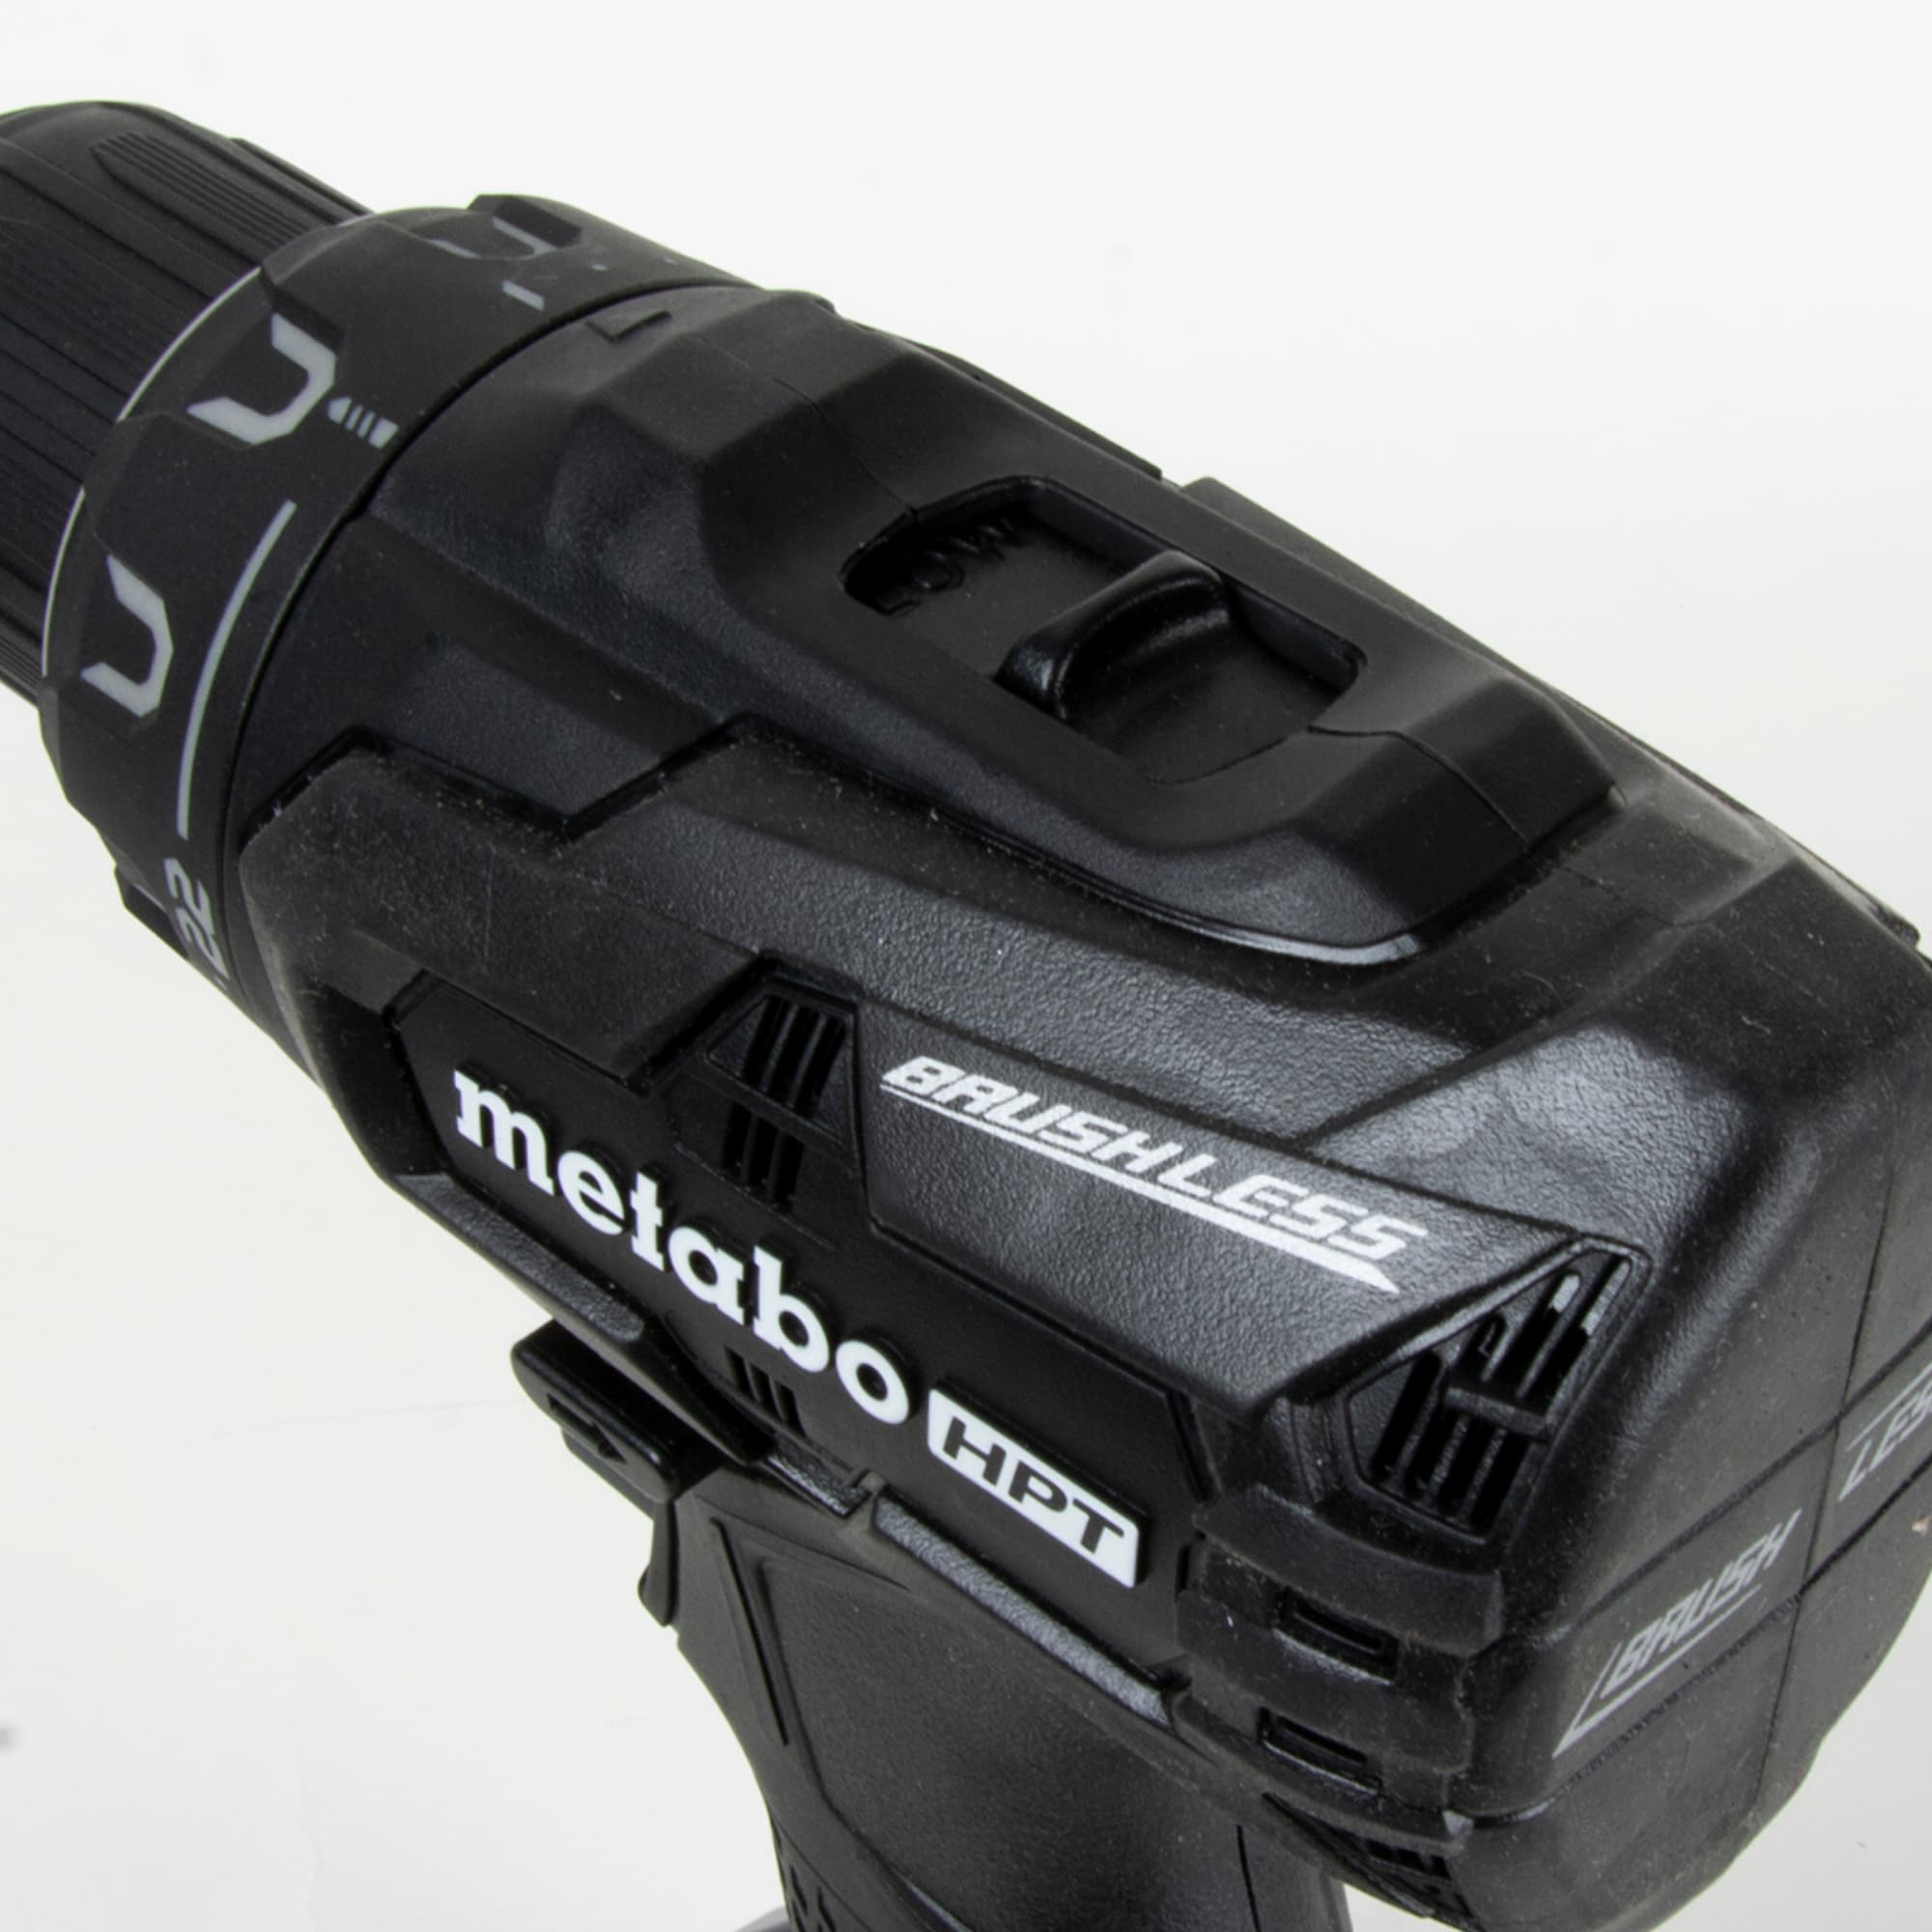 Metabo HPT 18-volt 1/2-in Brushless Cordless Drill (1-Battery